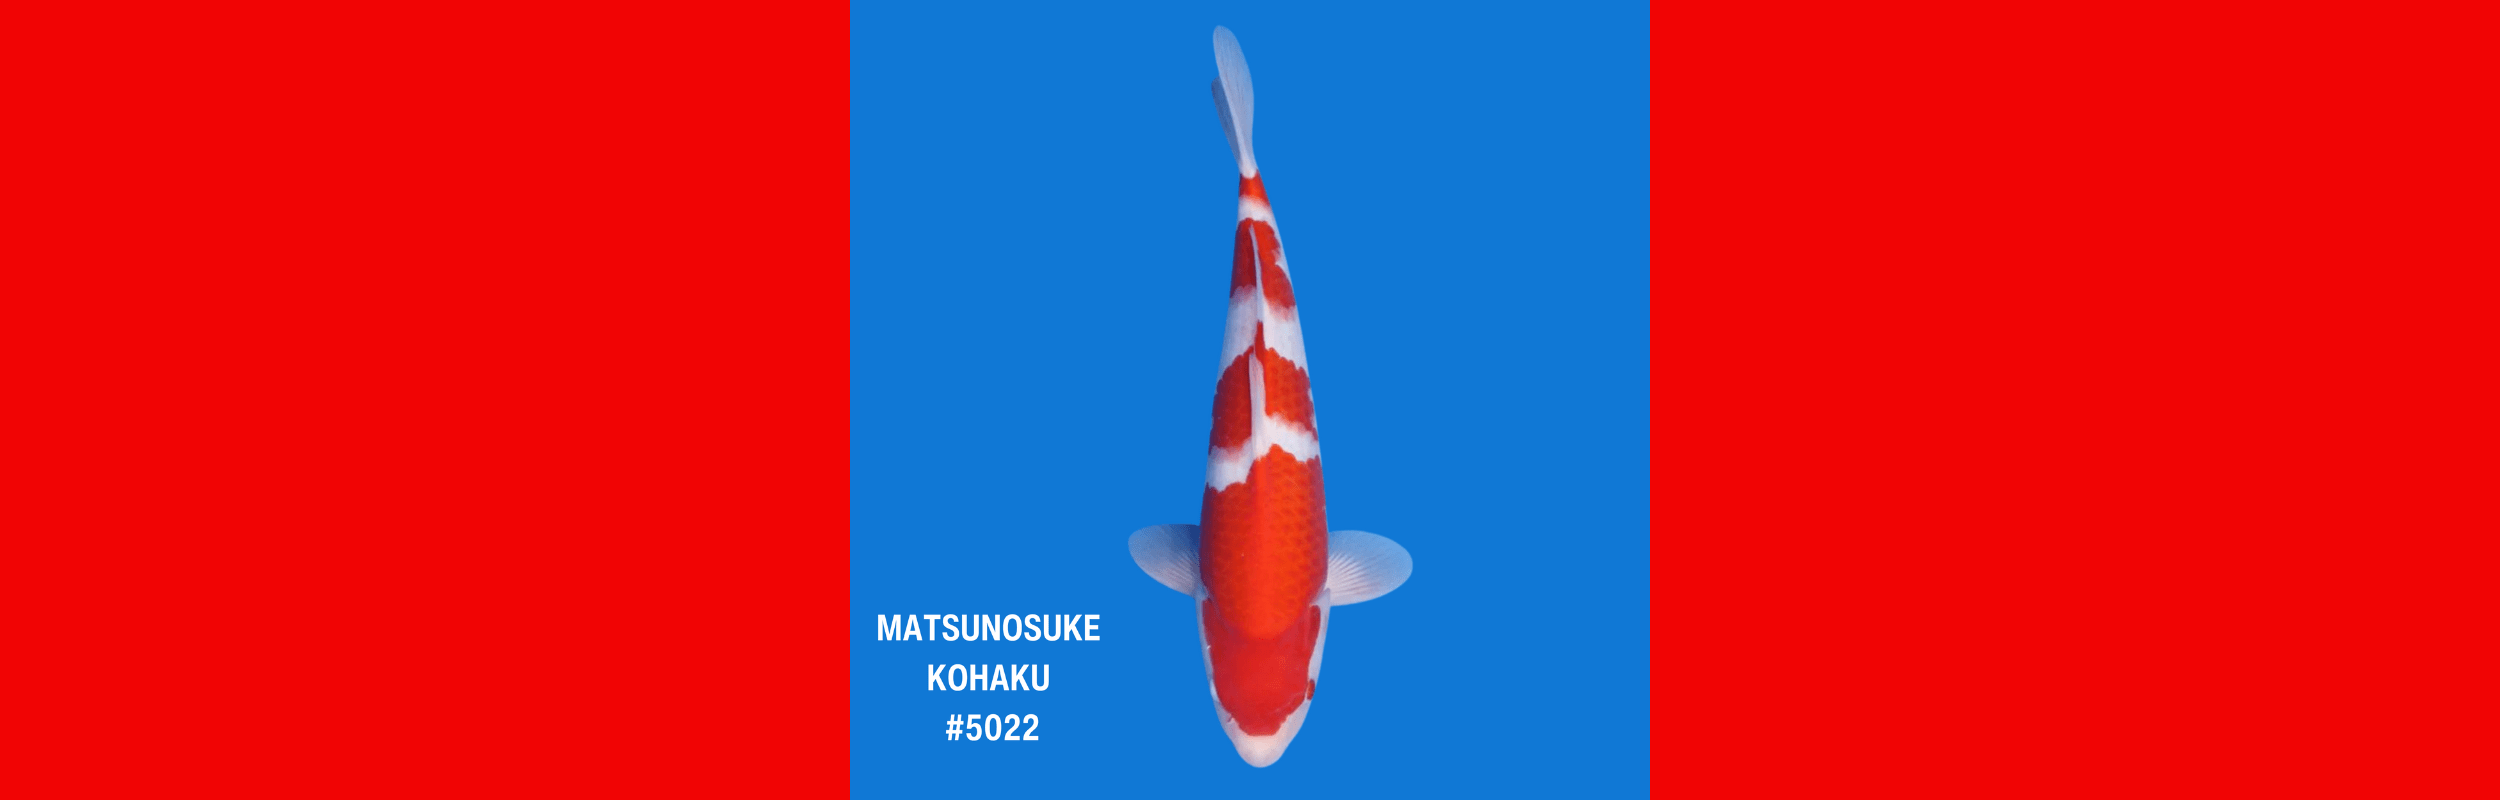 MATSUNOSUKE KOHAKU #5022